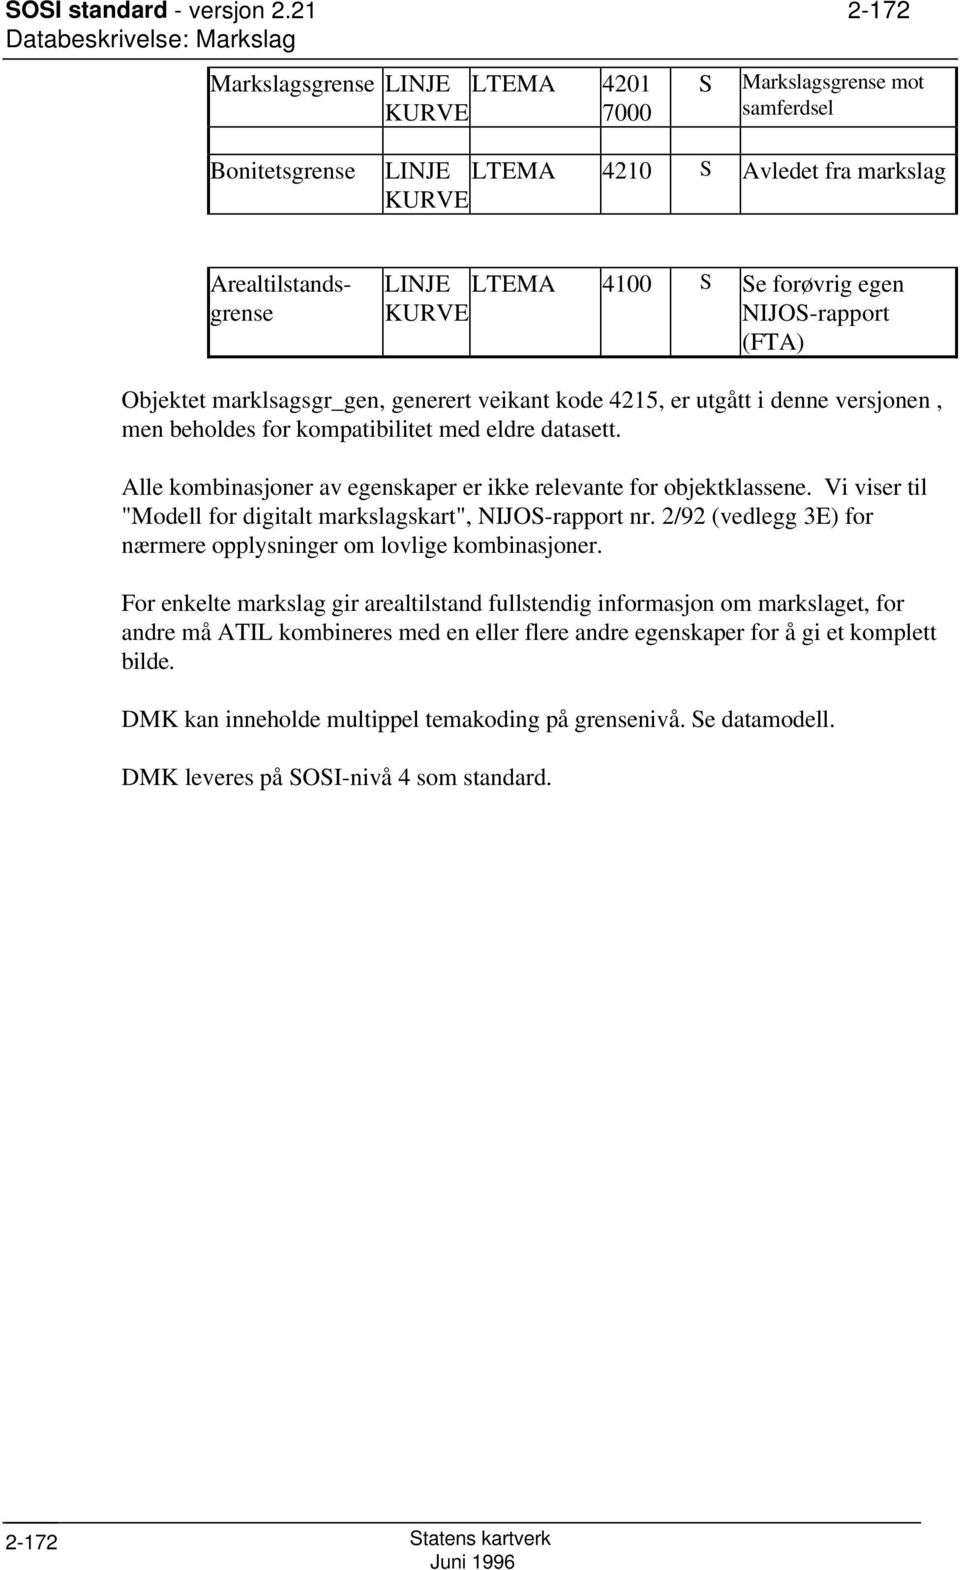 egen KURVE NIJOS-rapport (FTA) Objektet marklsagsgr_gen, generert veikant kode 4215, er utgått i denne versjonen, men beholdes for kompatibilitet med eldre datasett.